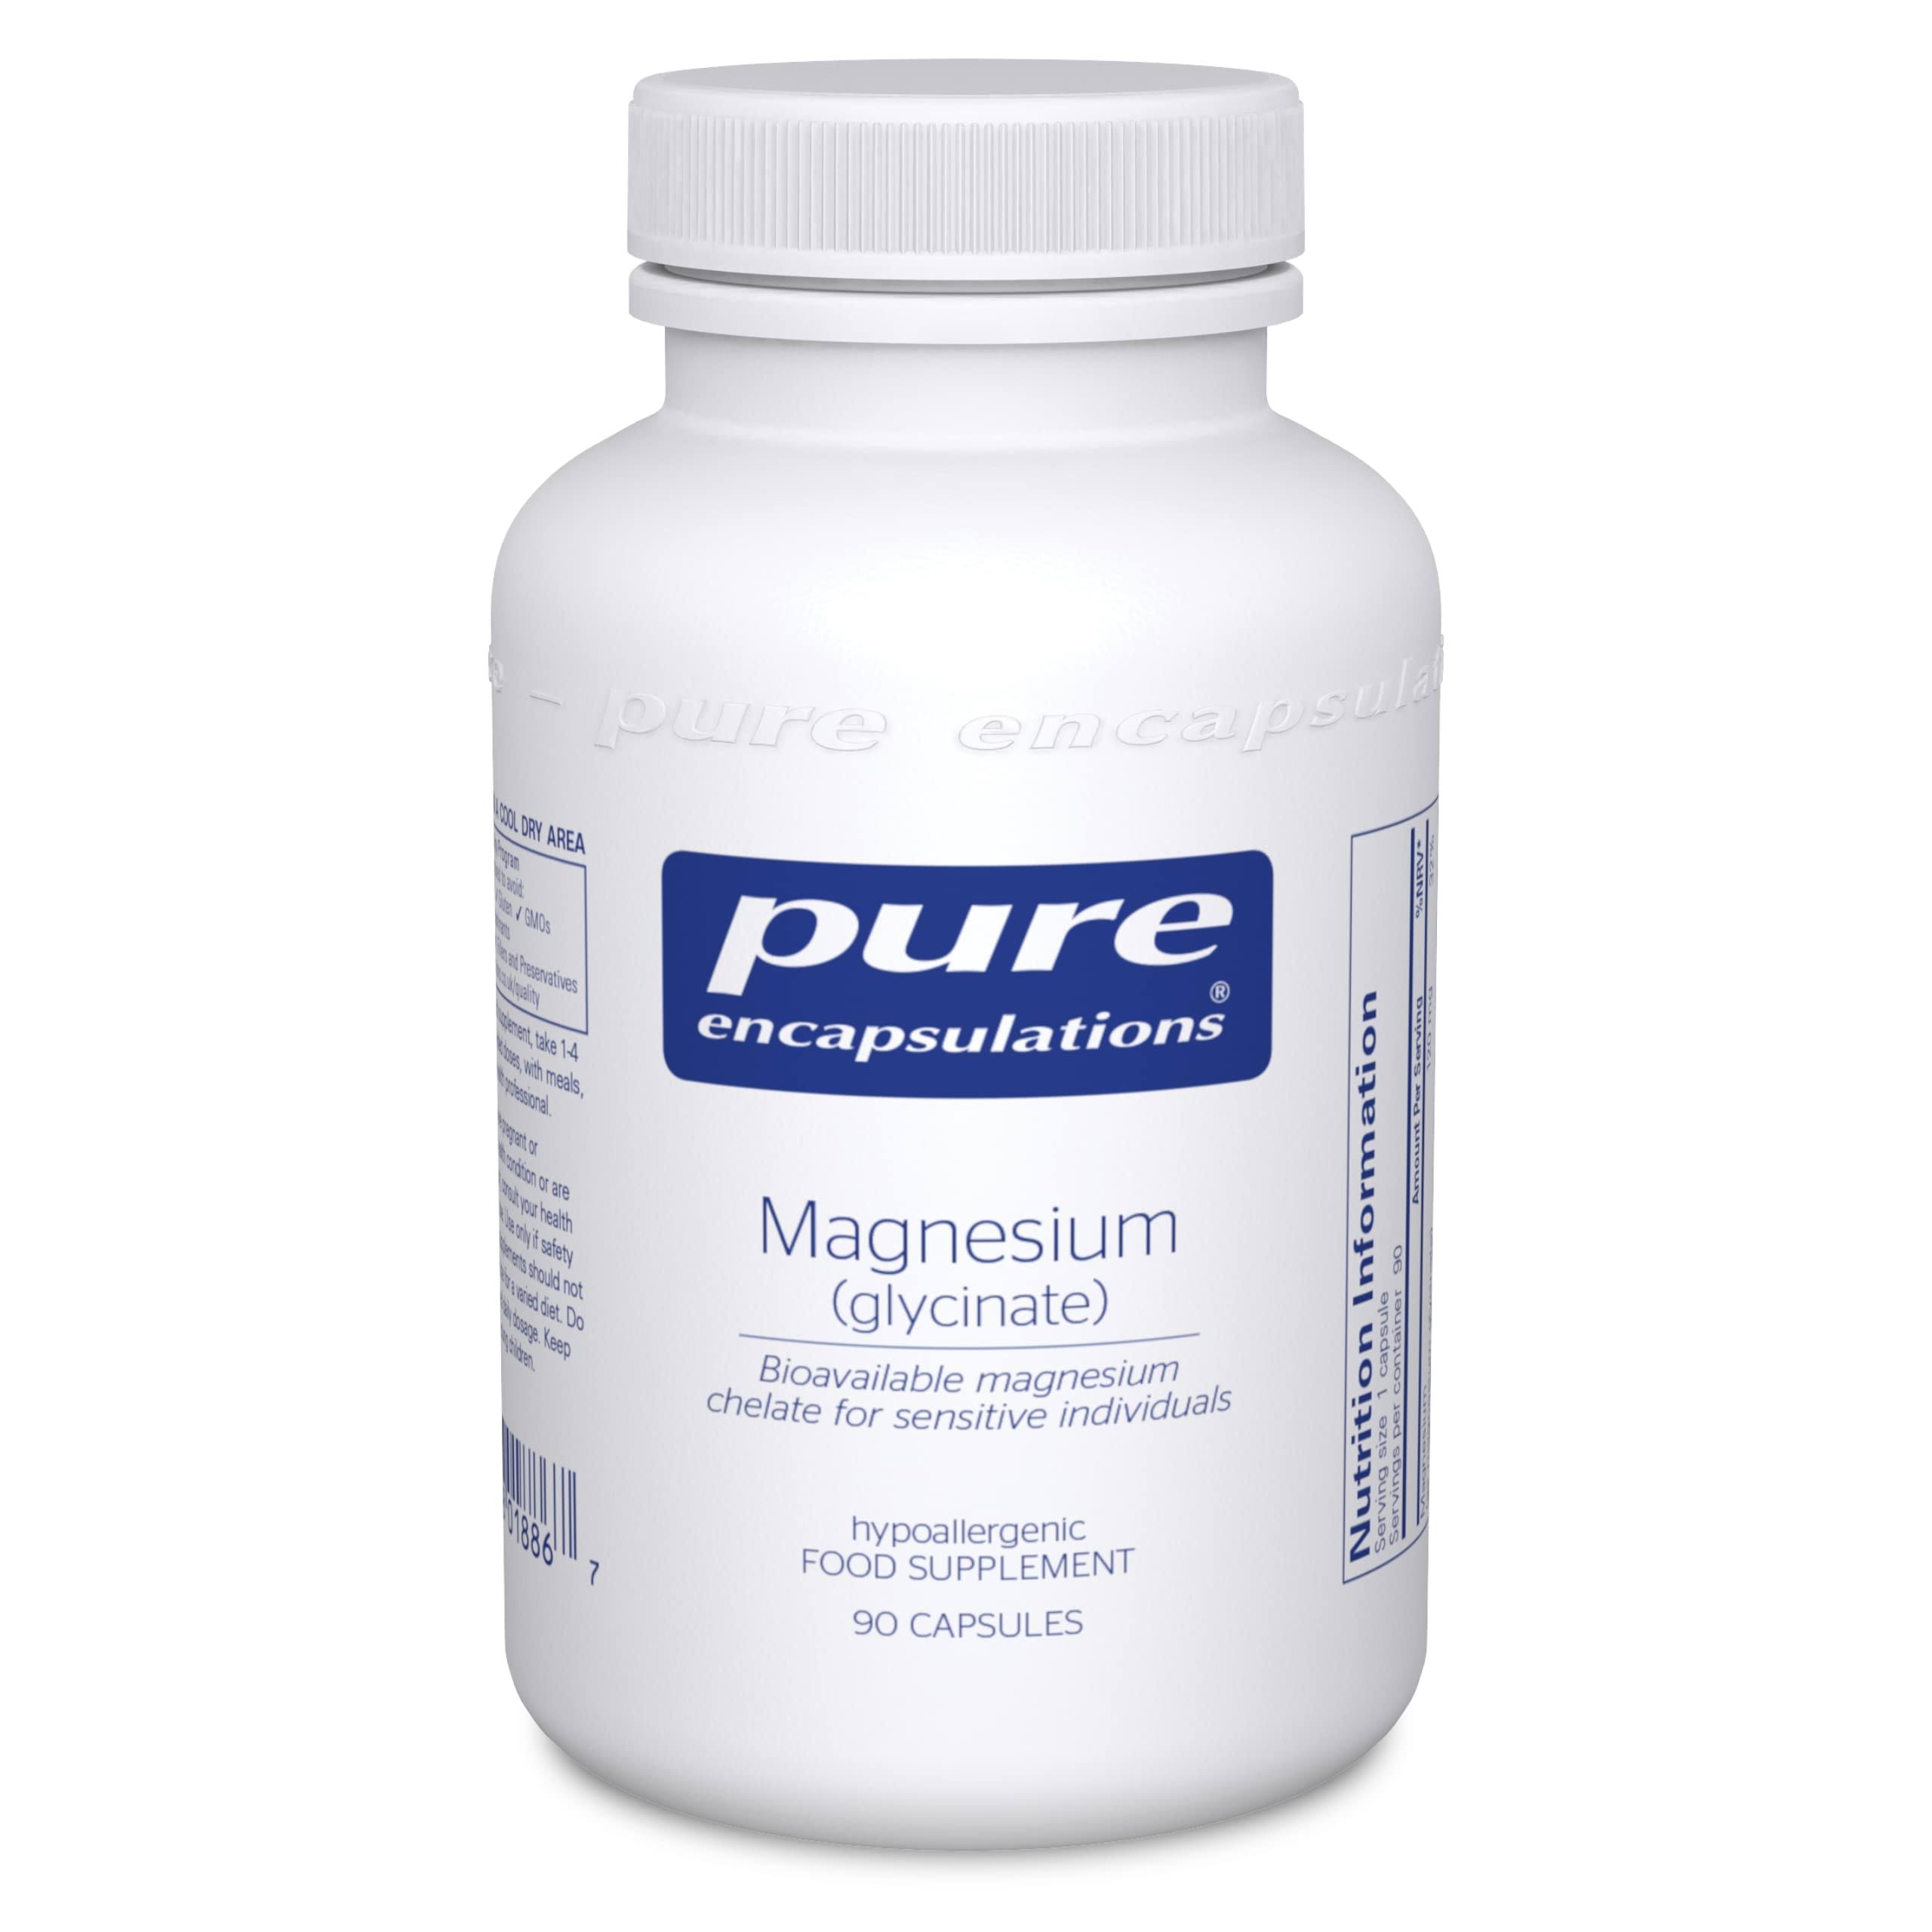 Pure Encapsulations Magnesium Glycinate - 90 Capsules